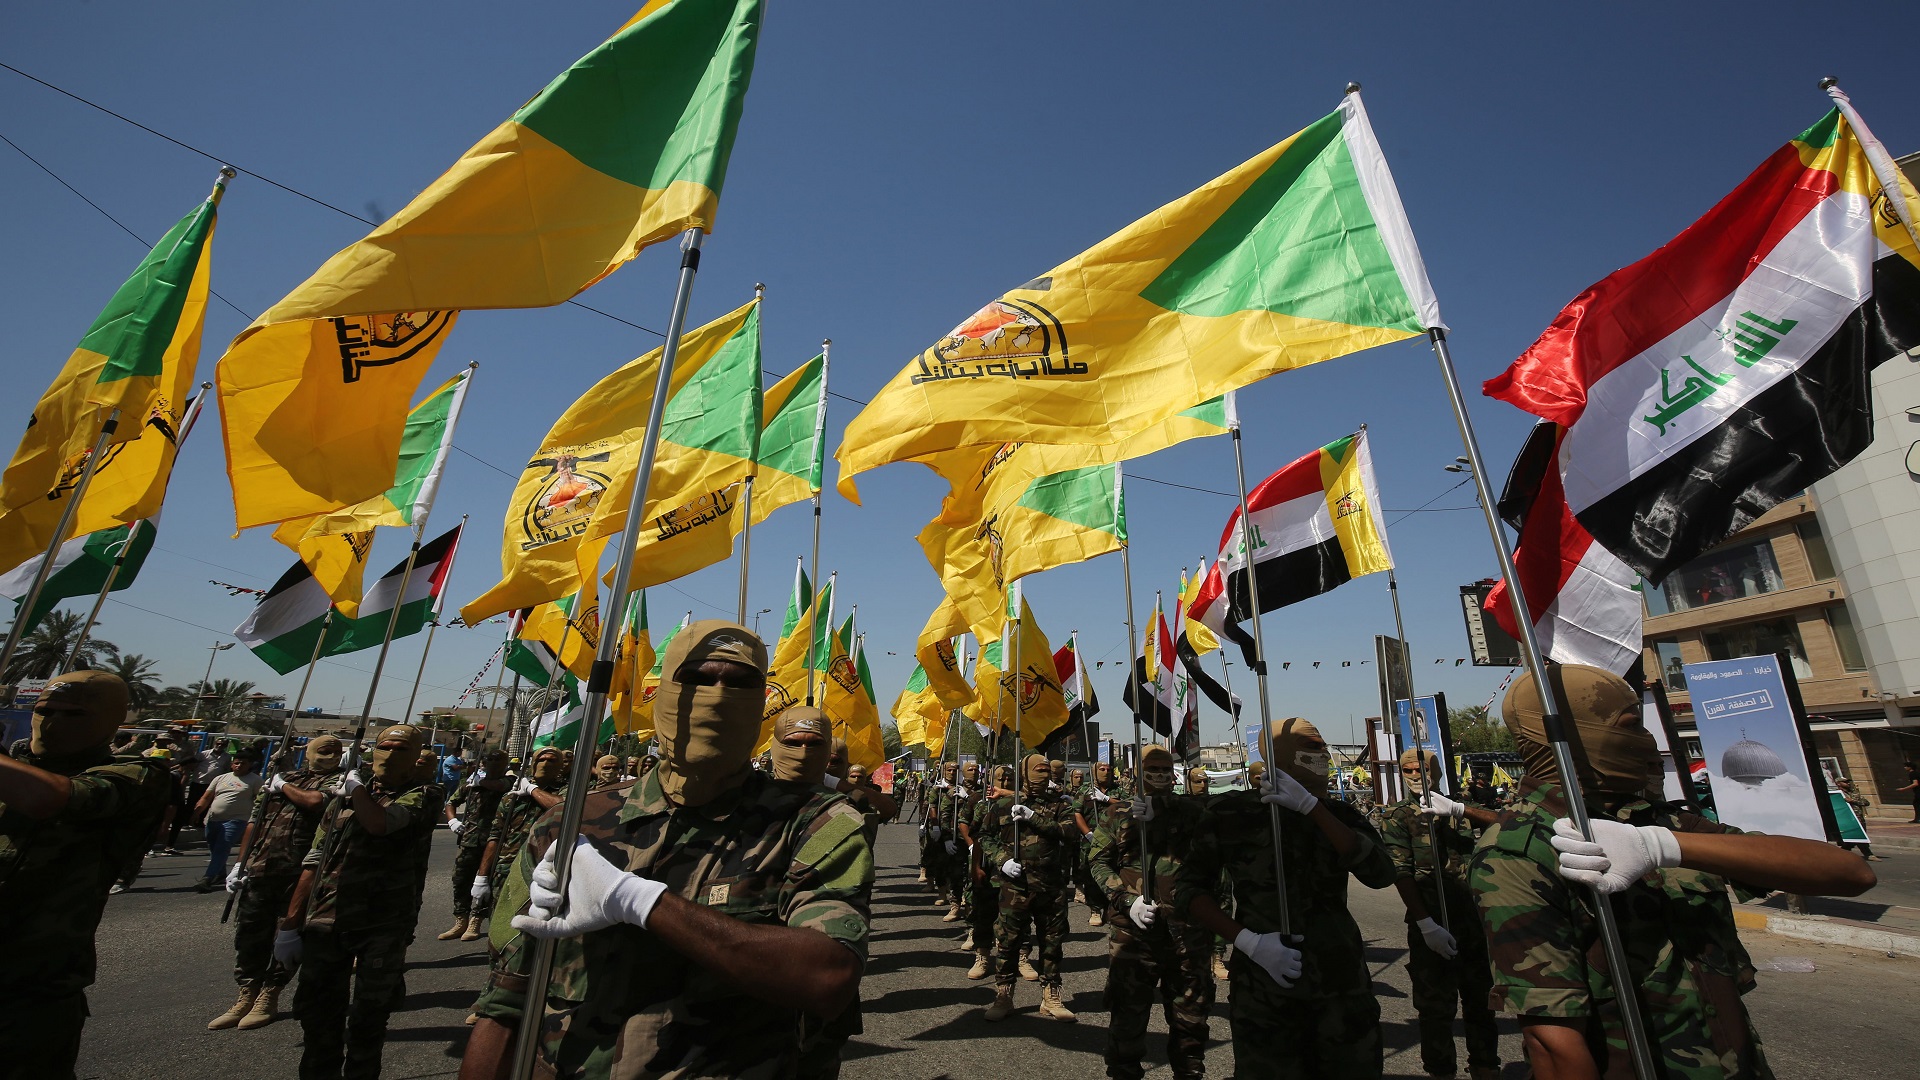 كتائب حزب الله تحث لـ"مشاركة واسعة في الانتخابات": سندعم هؤلاء